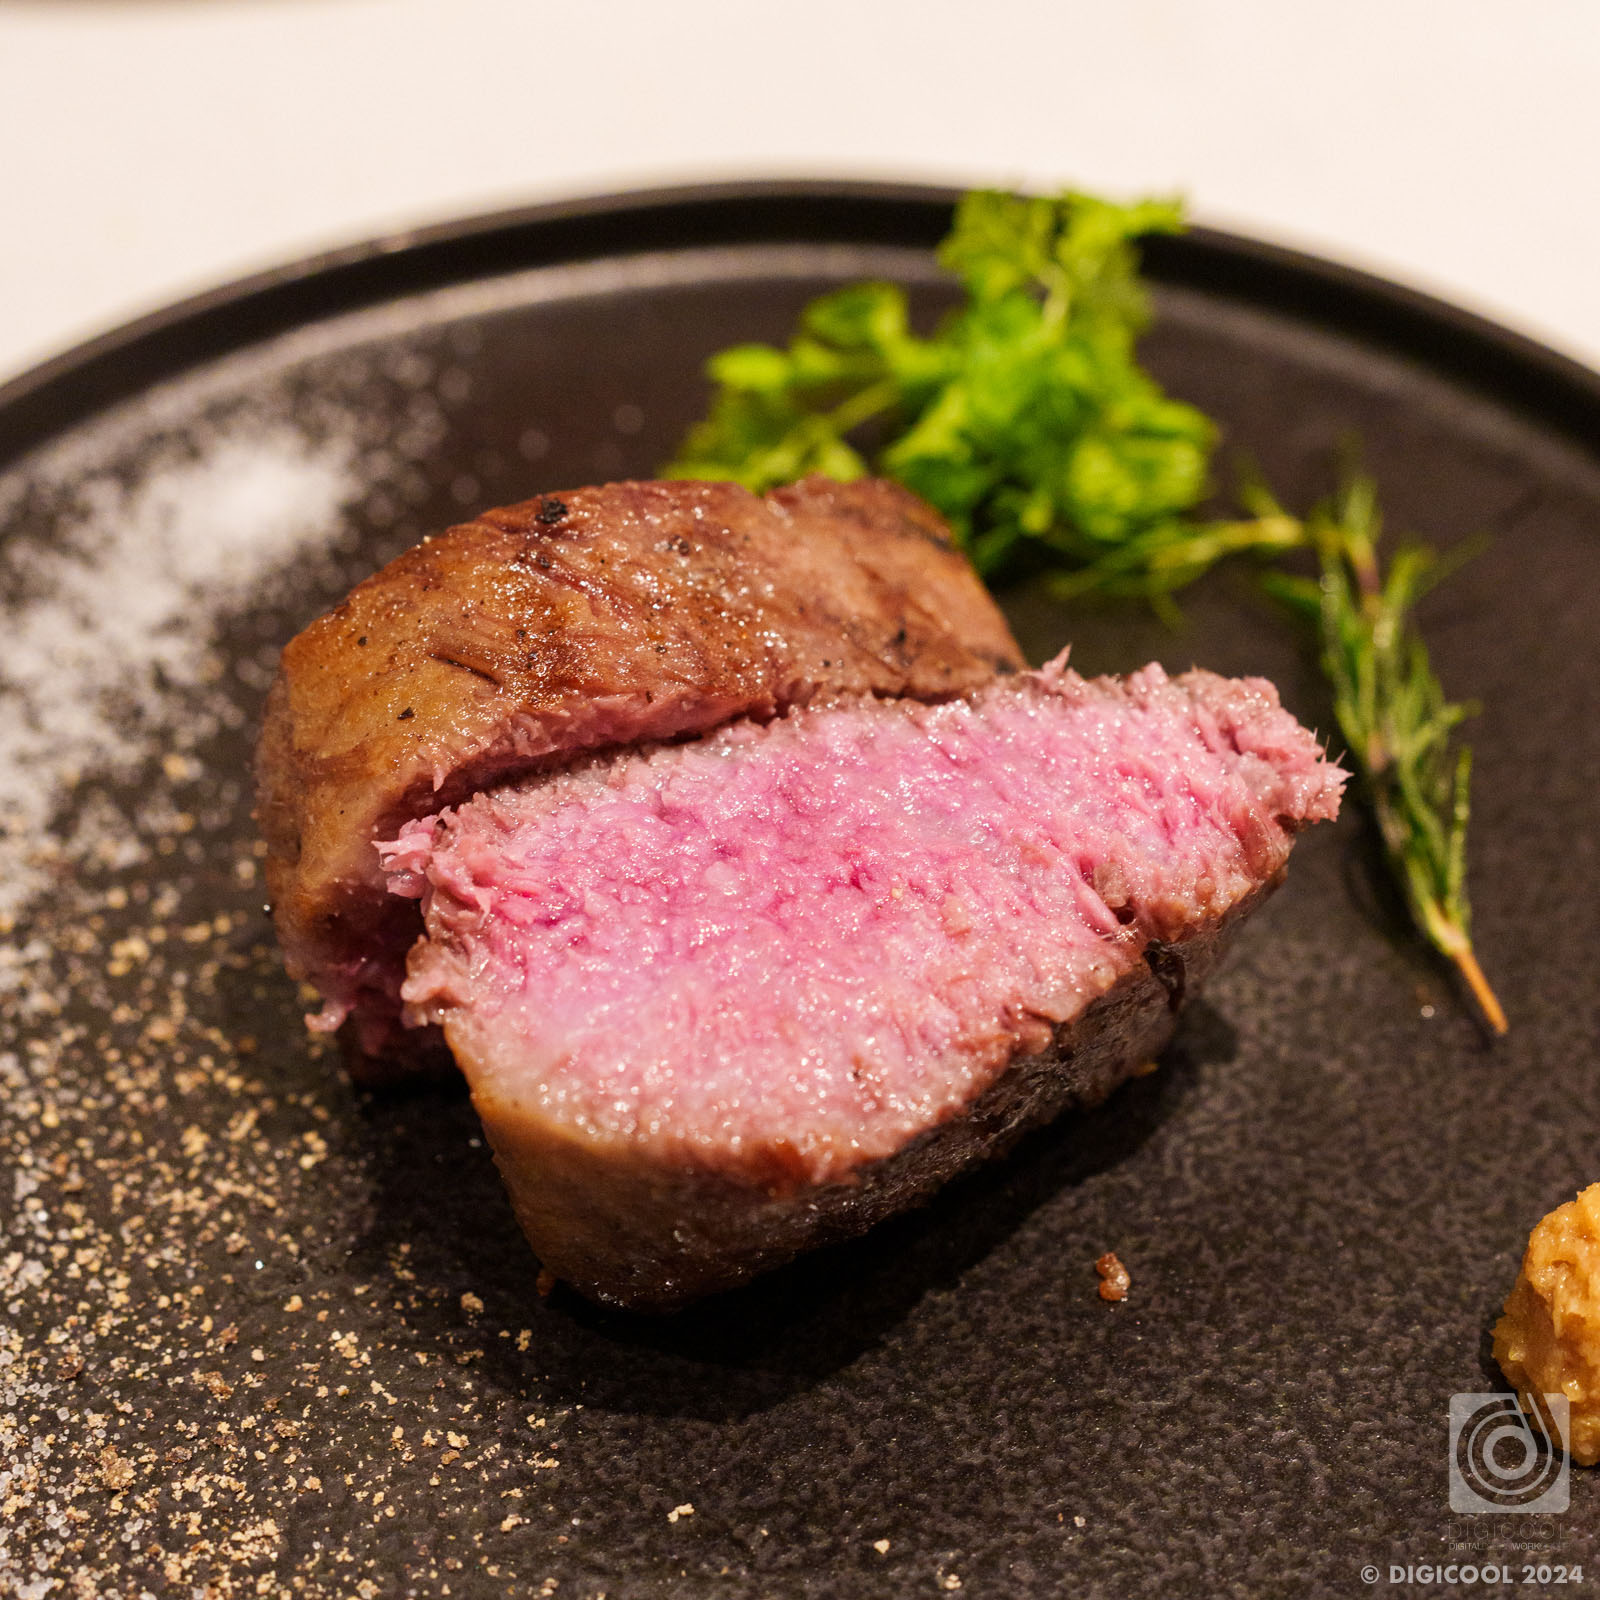 沖縄県 宮古島市・やっぱりここは別格な美味しさ。「ダグズ・グリル」で多良間牛ステーキを堪能する。